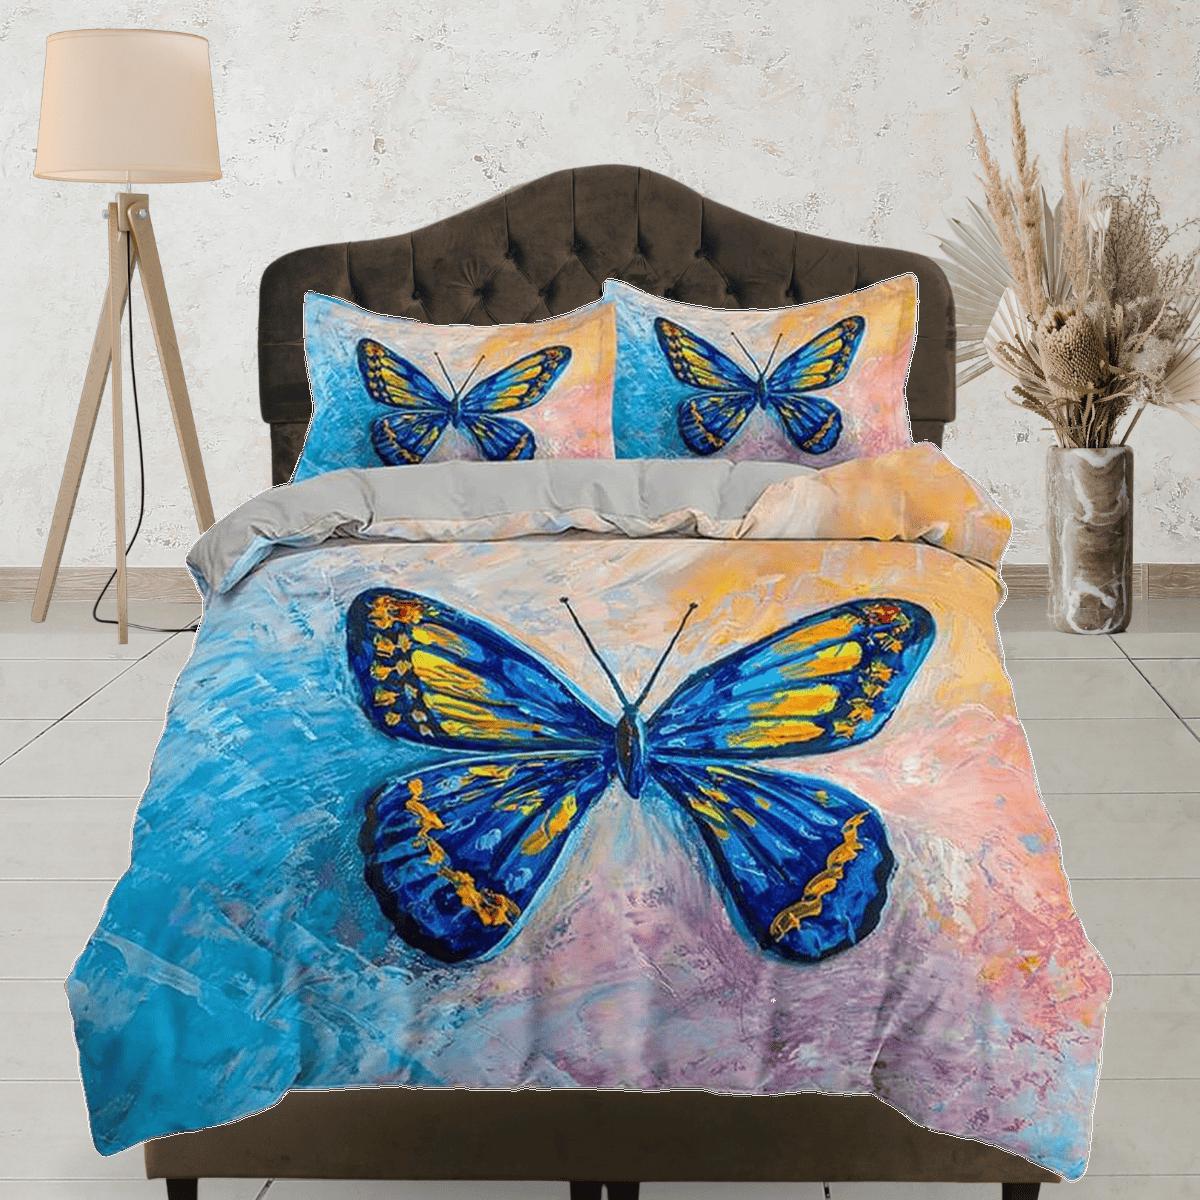 daintyduvet Blue butterfly art painting bedding duvet cover boho chic dorm bedding full size adult duvet king queen twin, nursery toddler bedding